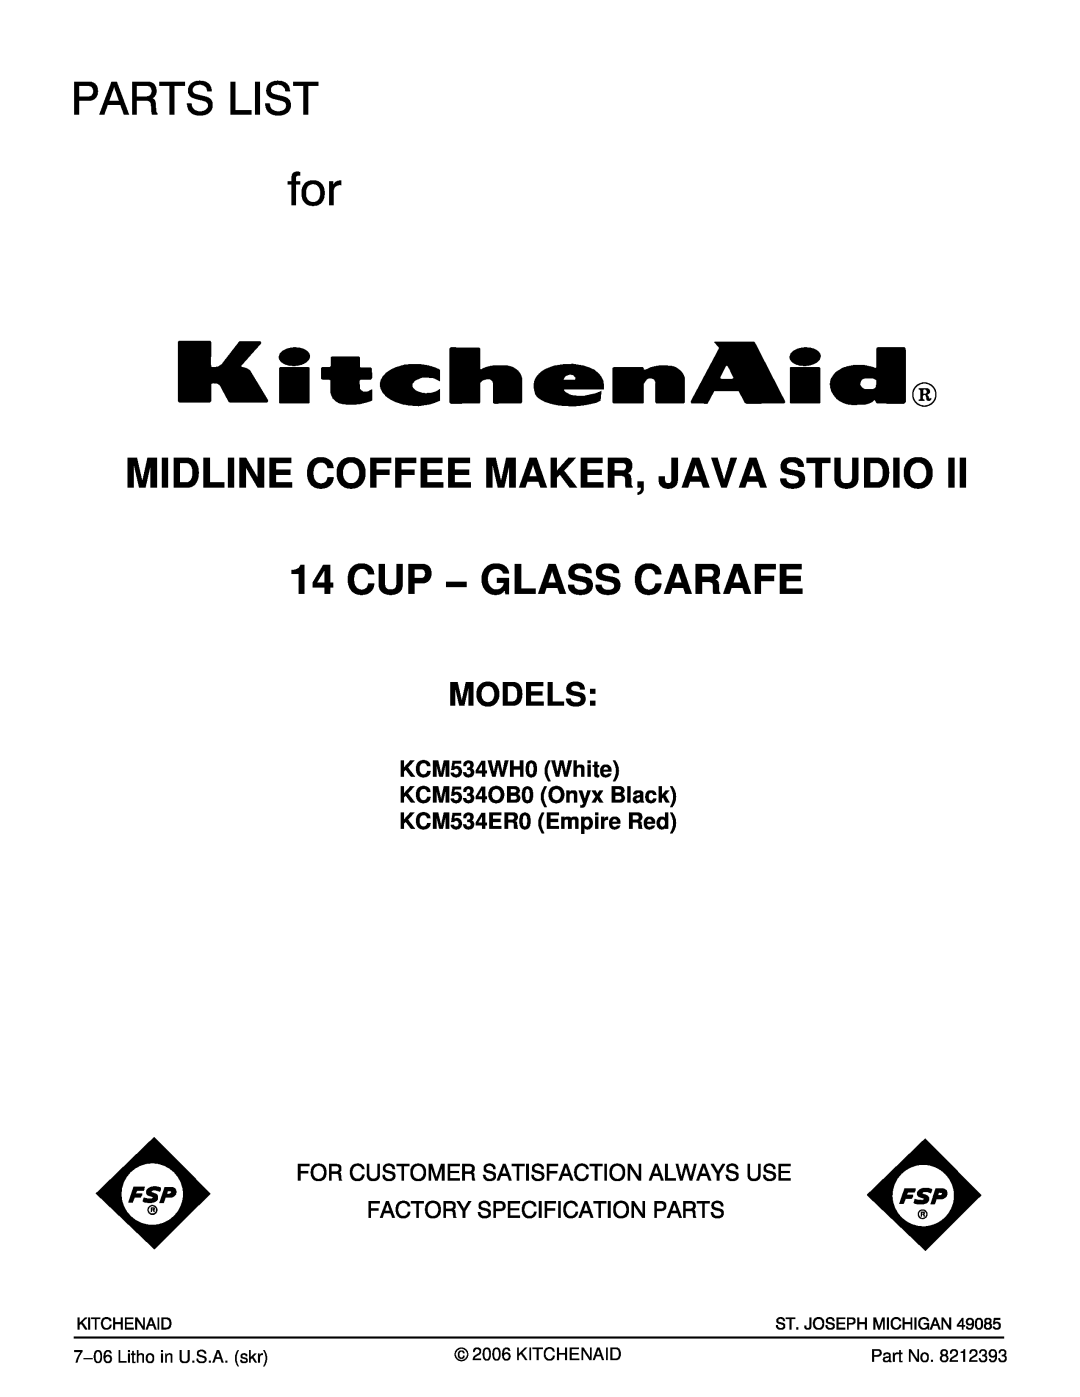 KitchenAid manual KCM534WH0 White KCM534OB0 Onyx Black KCM534ER0 Empire Red, Midline Coffee Maker, Java Studio, Models 